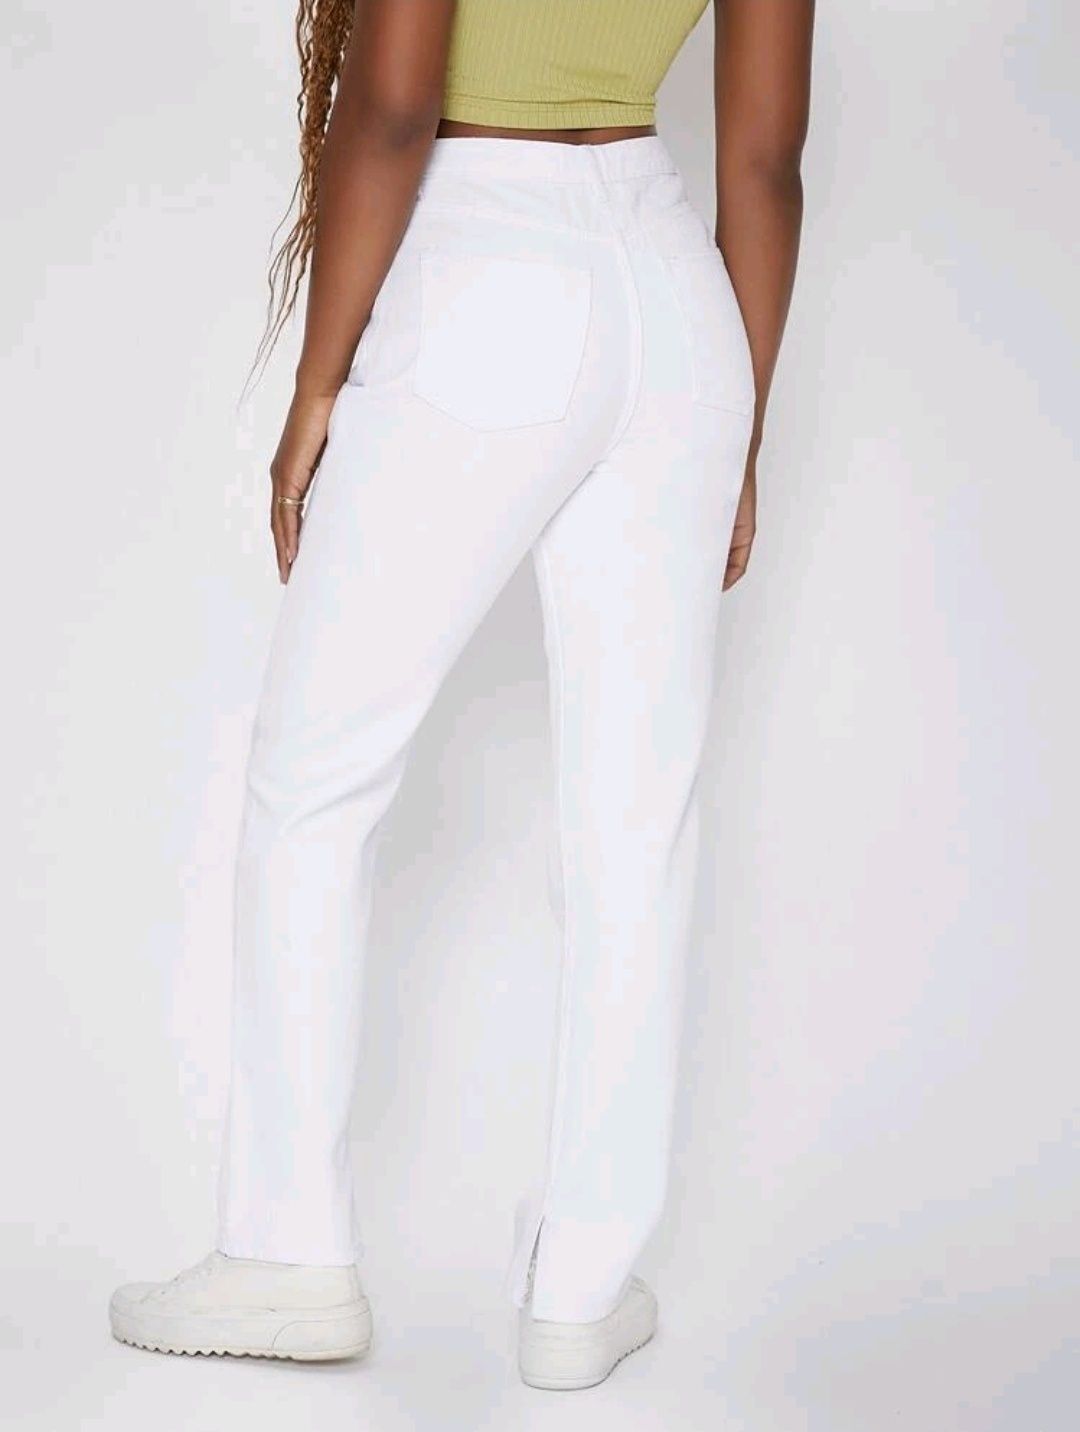 Jeans brancos cintura subida